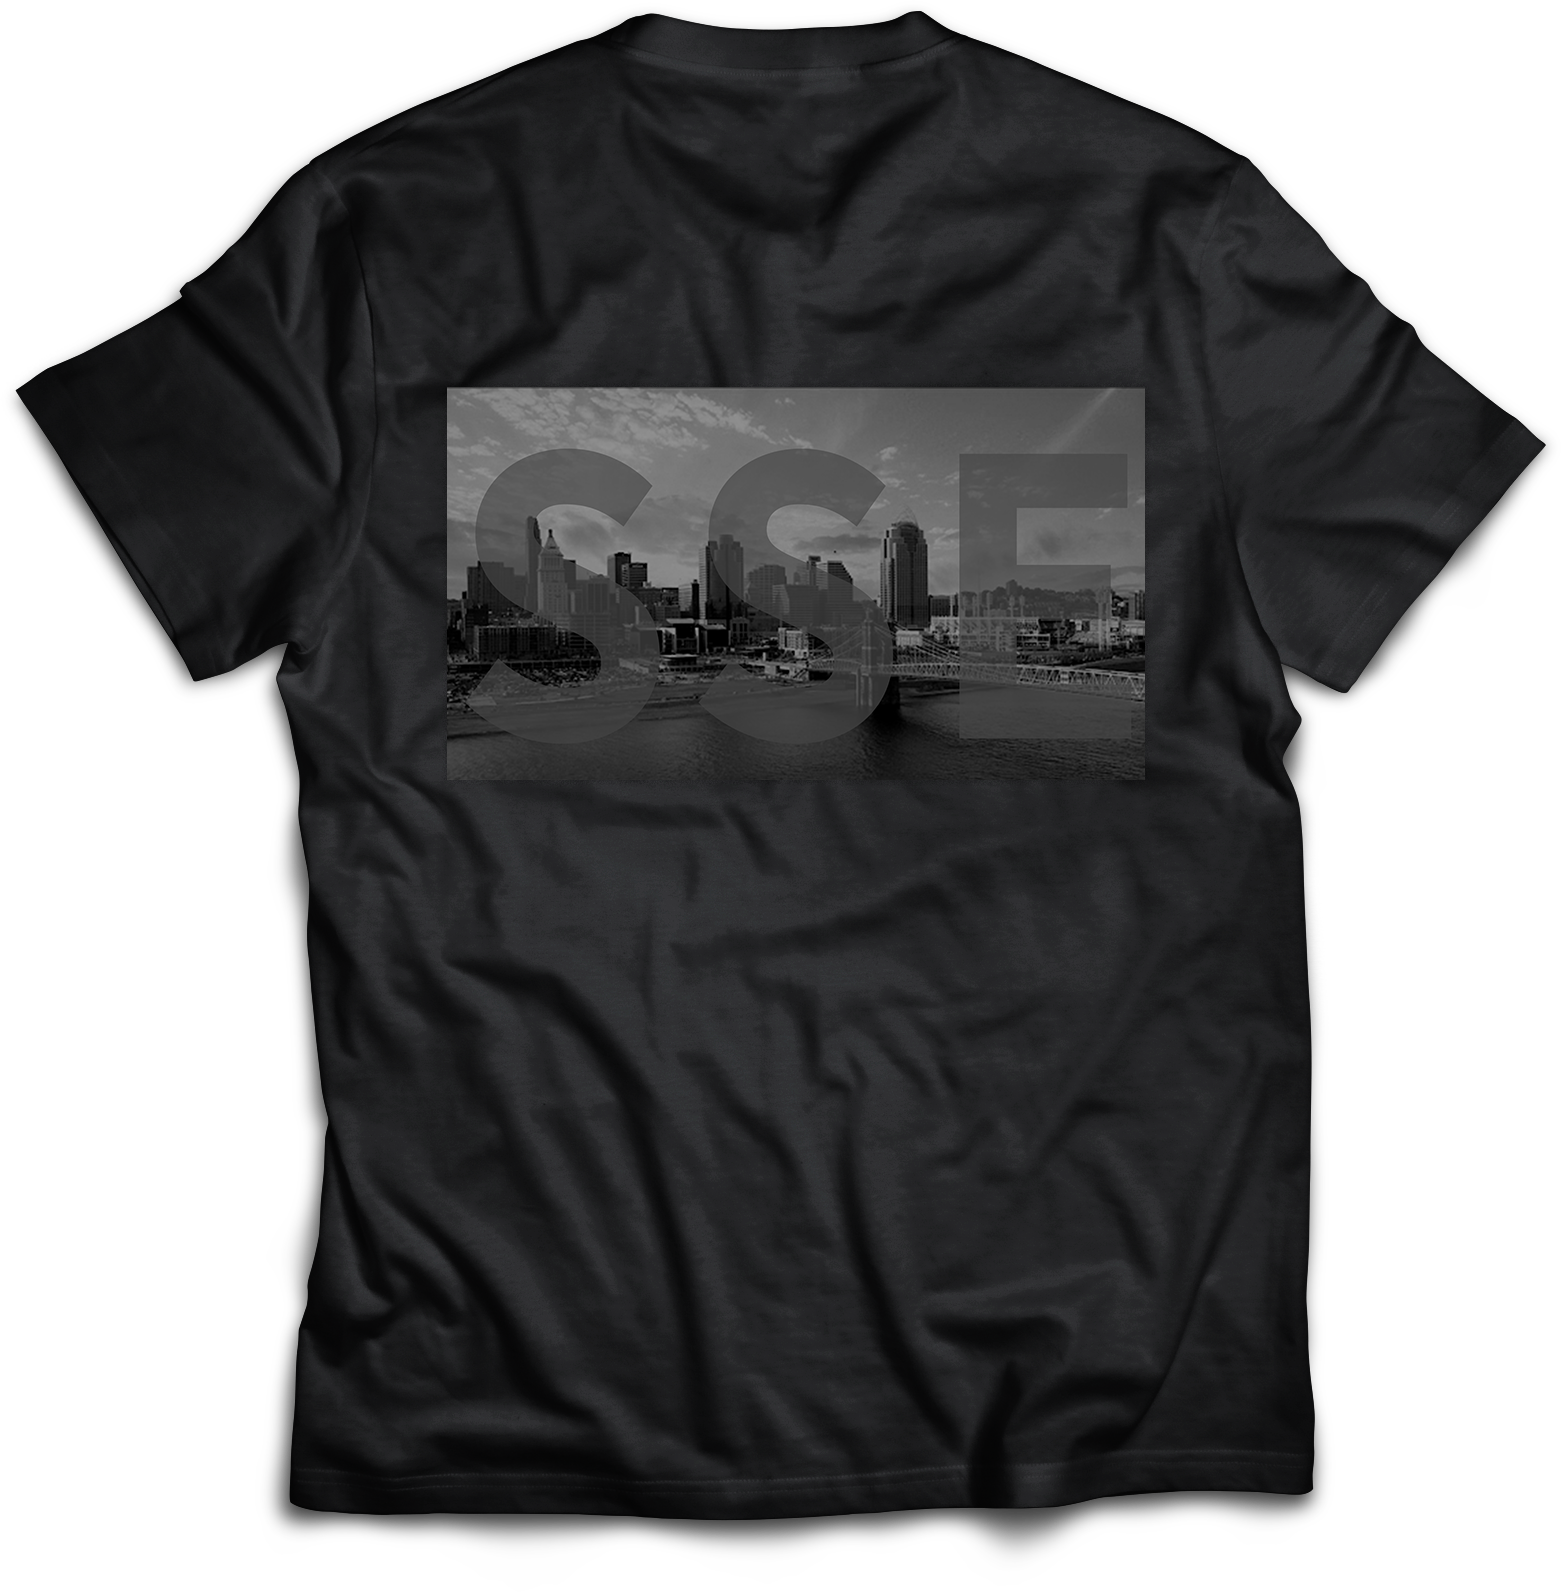 SSE 'City Dreamz' T-Shirt